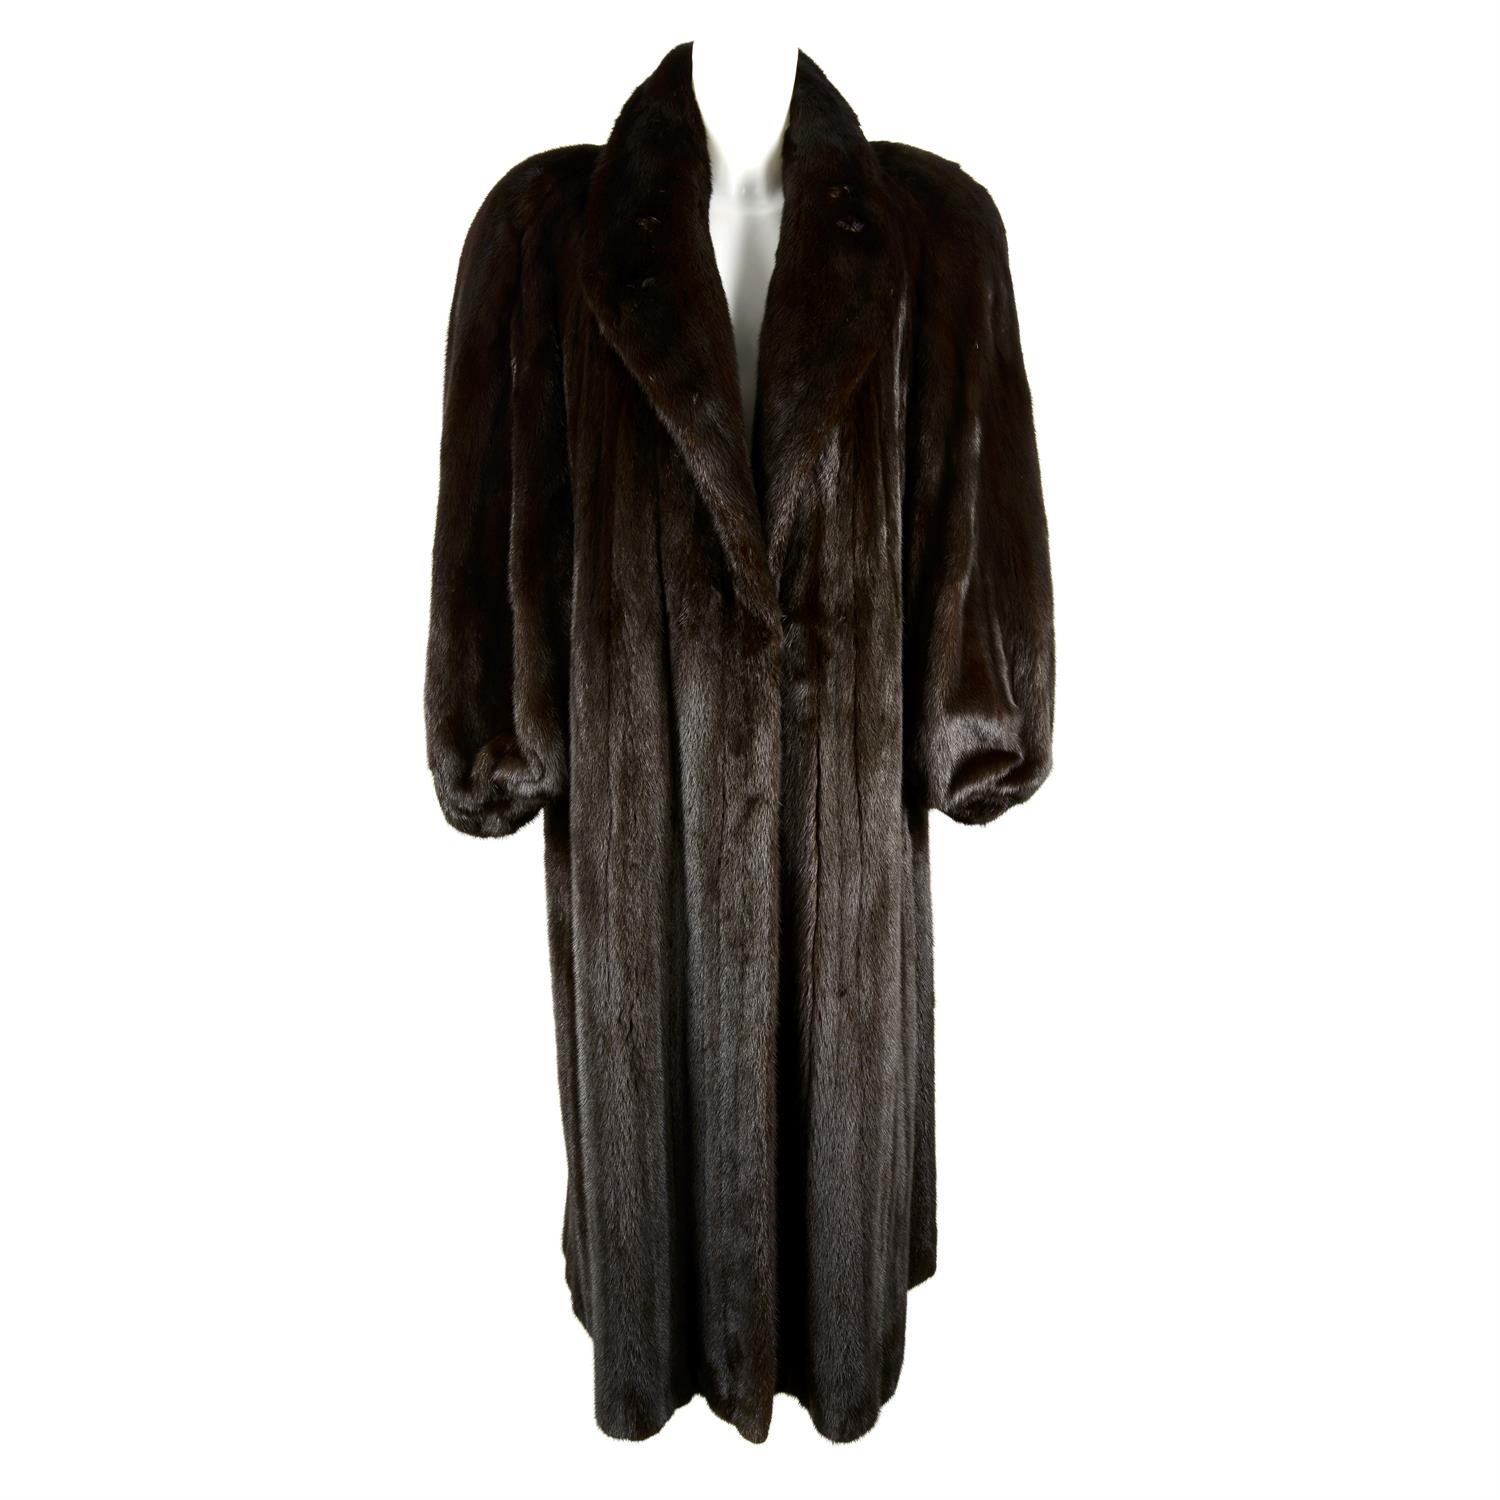 HARRODS & GROSVENOR – a dark brown full length Mink coat.